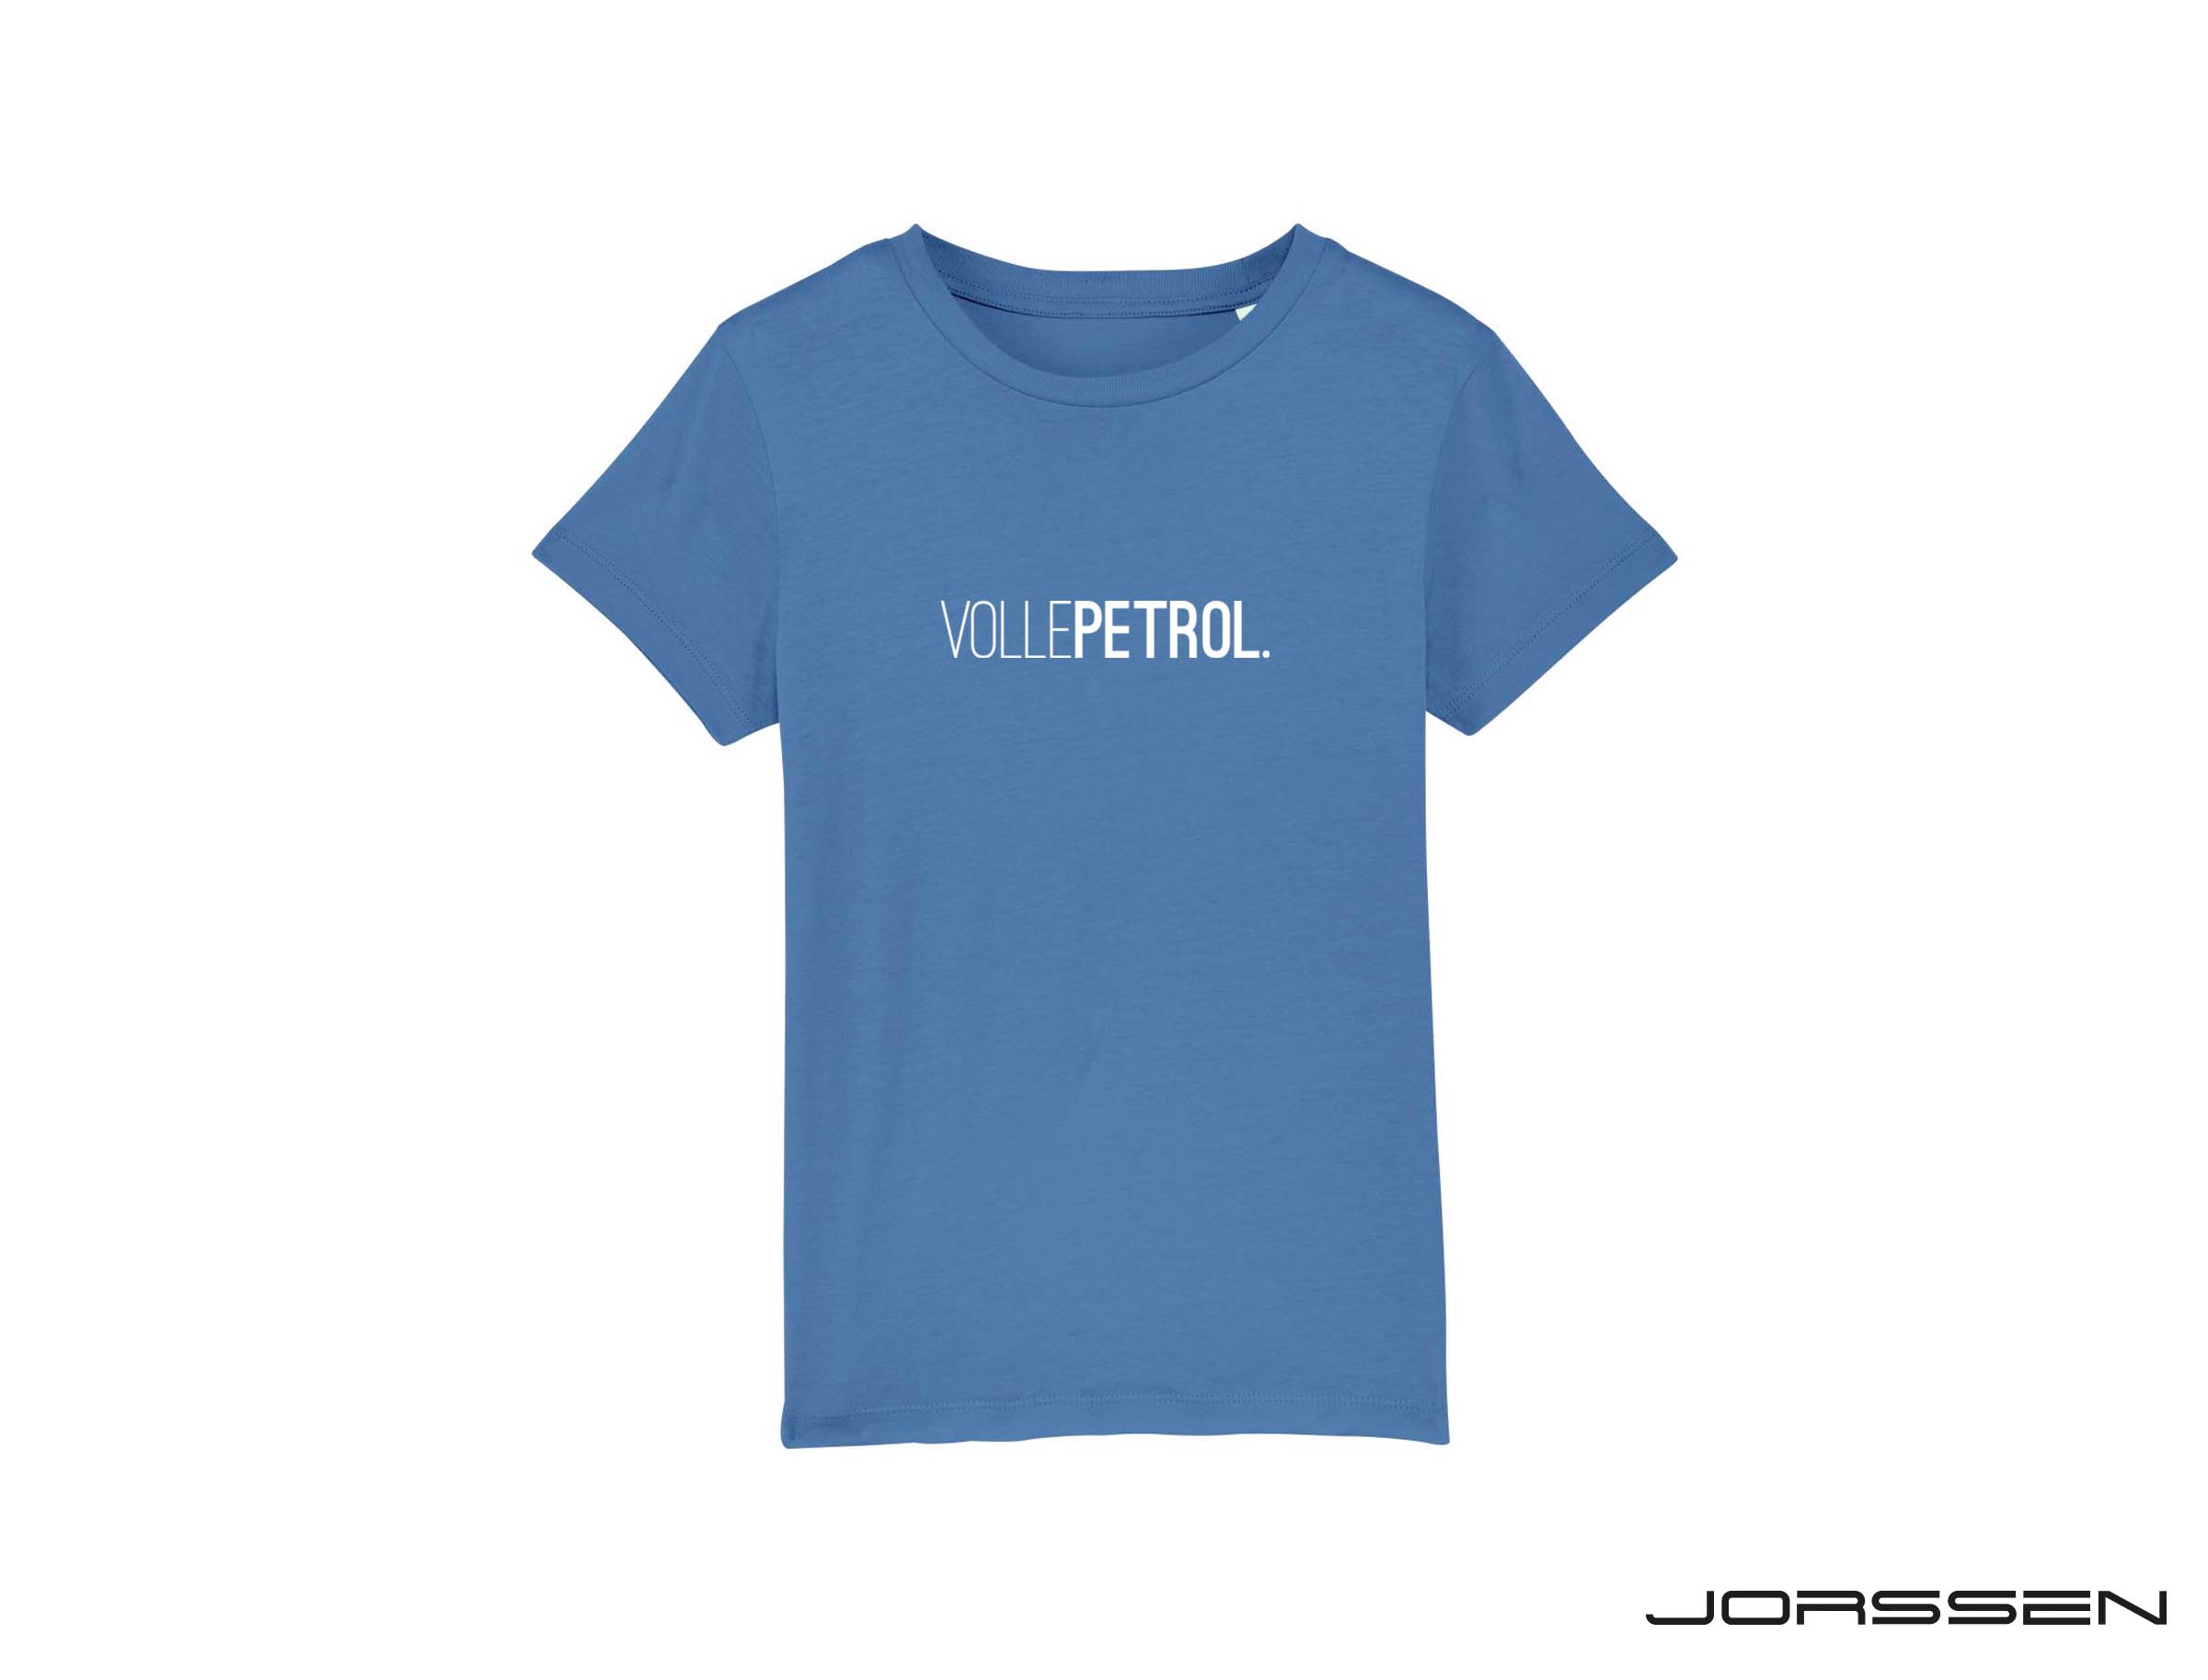 VollePetrol. Blauwe T-shirt voor kinderen in samenwerking met Jorssen